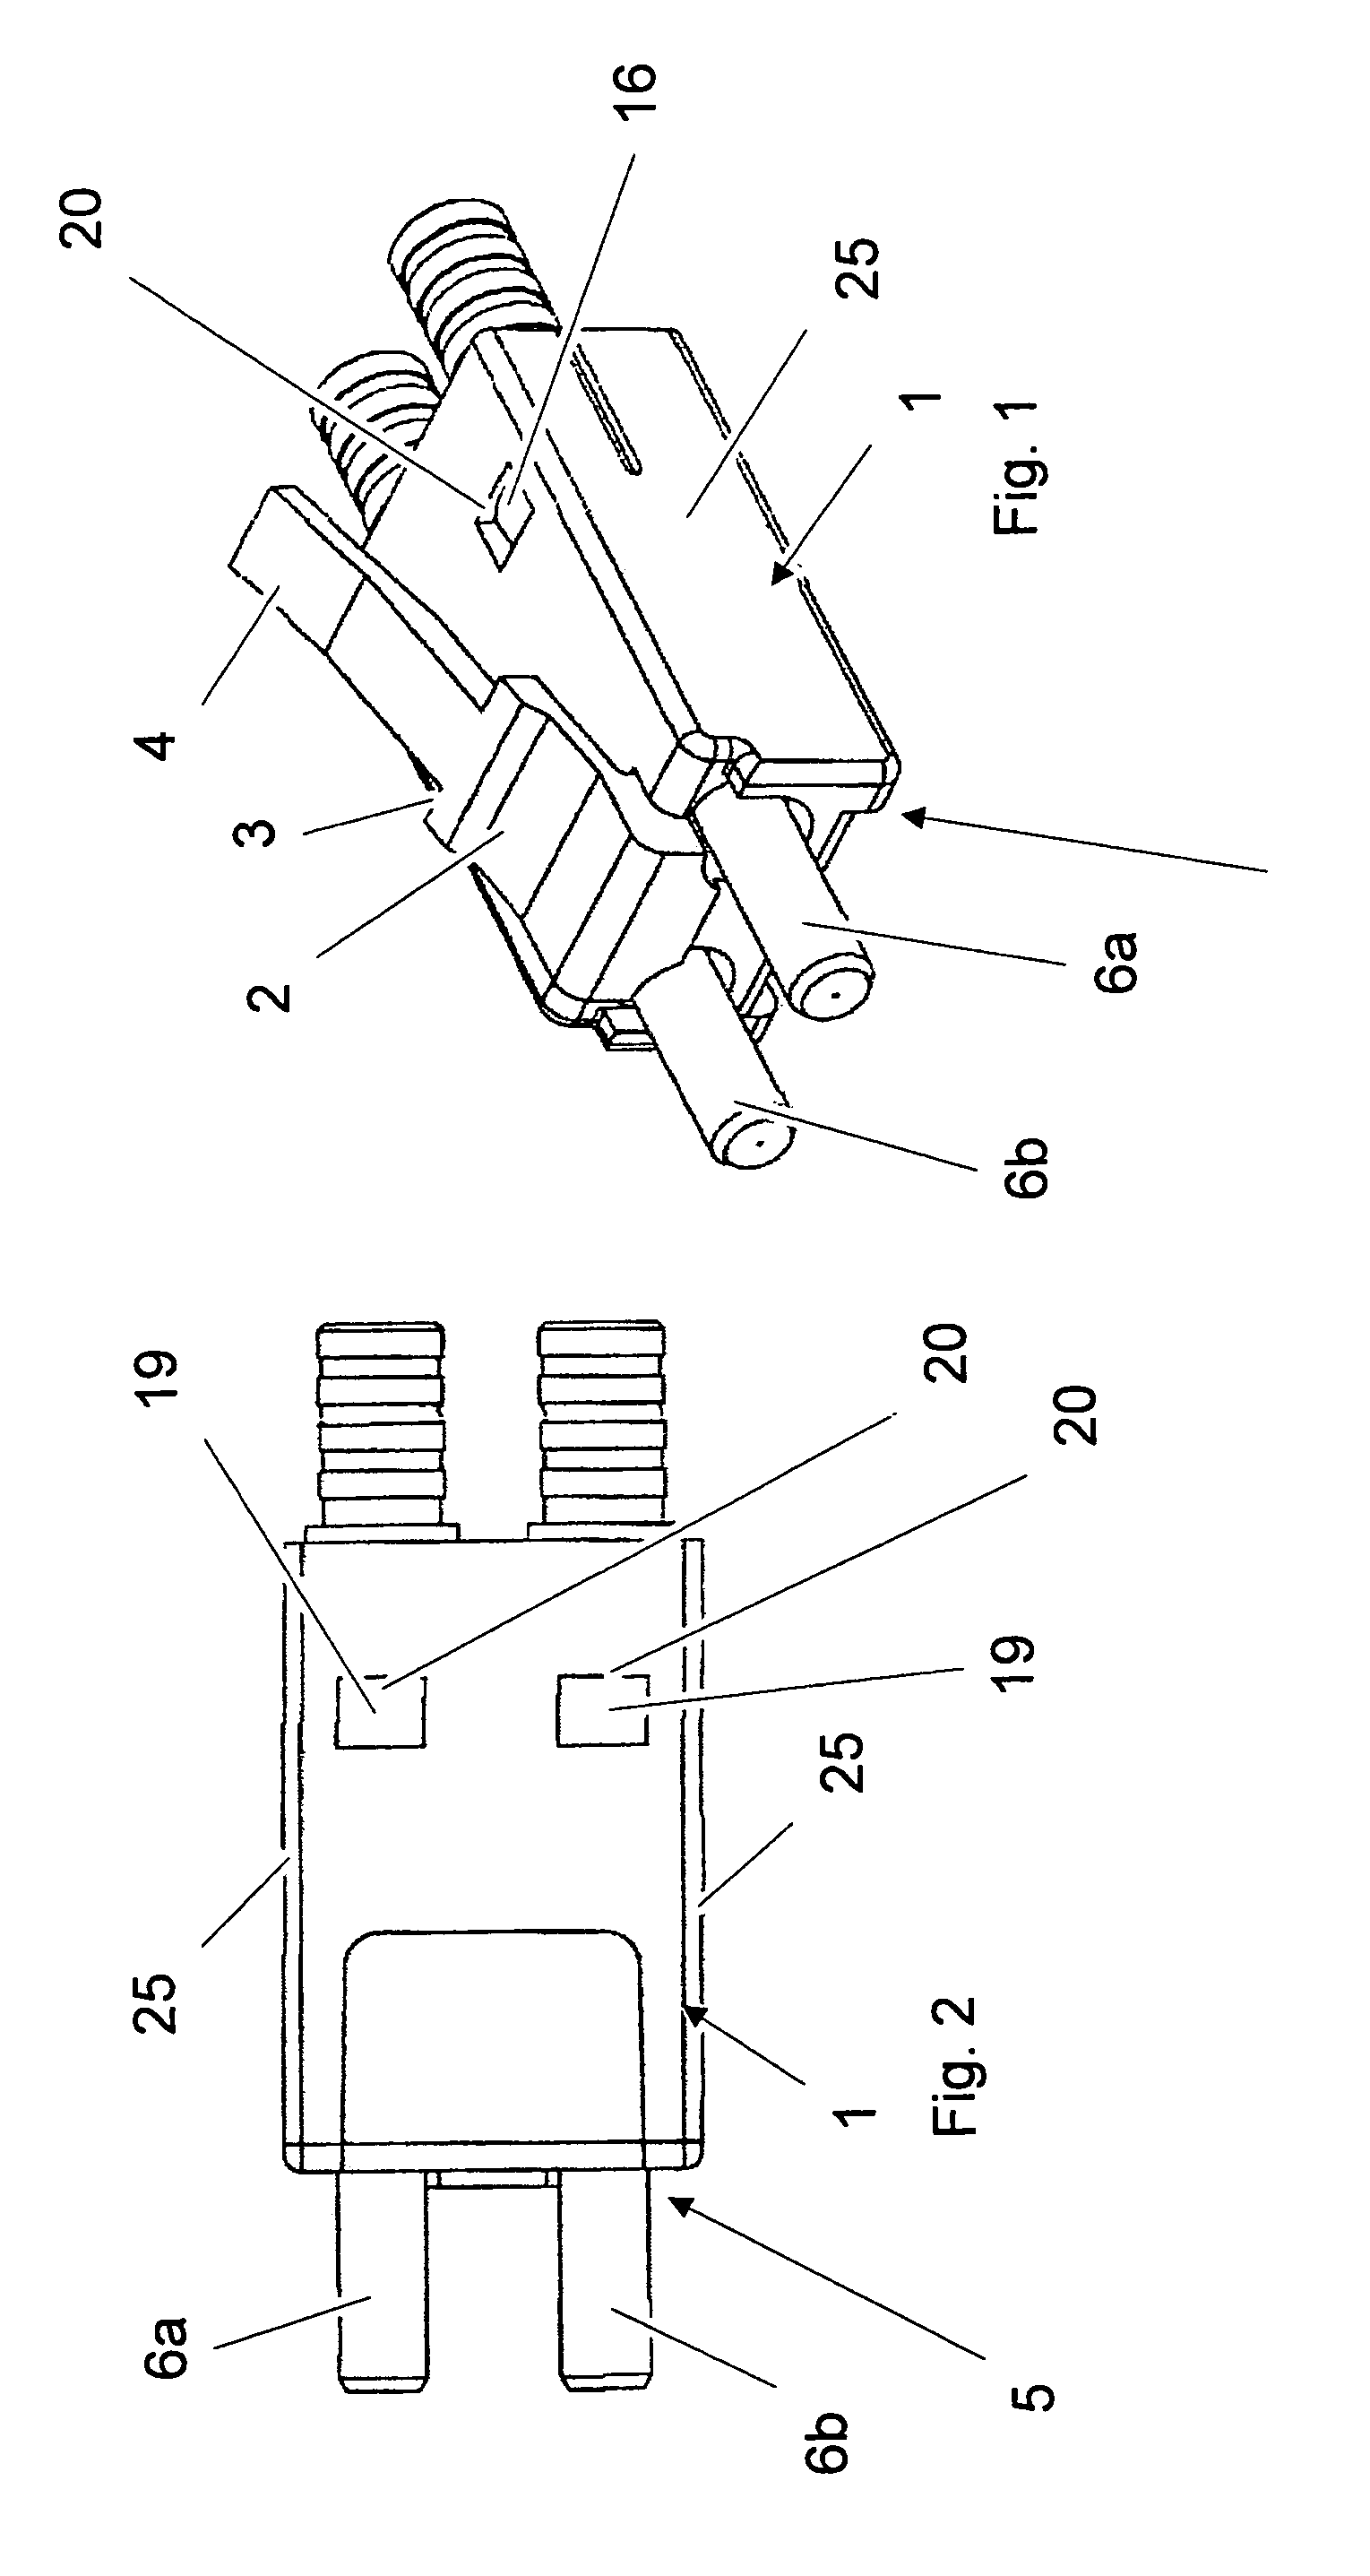 Fibre optic duplex connector